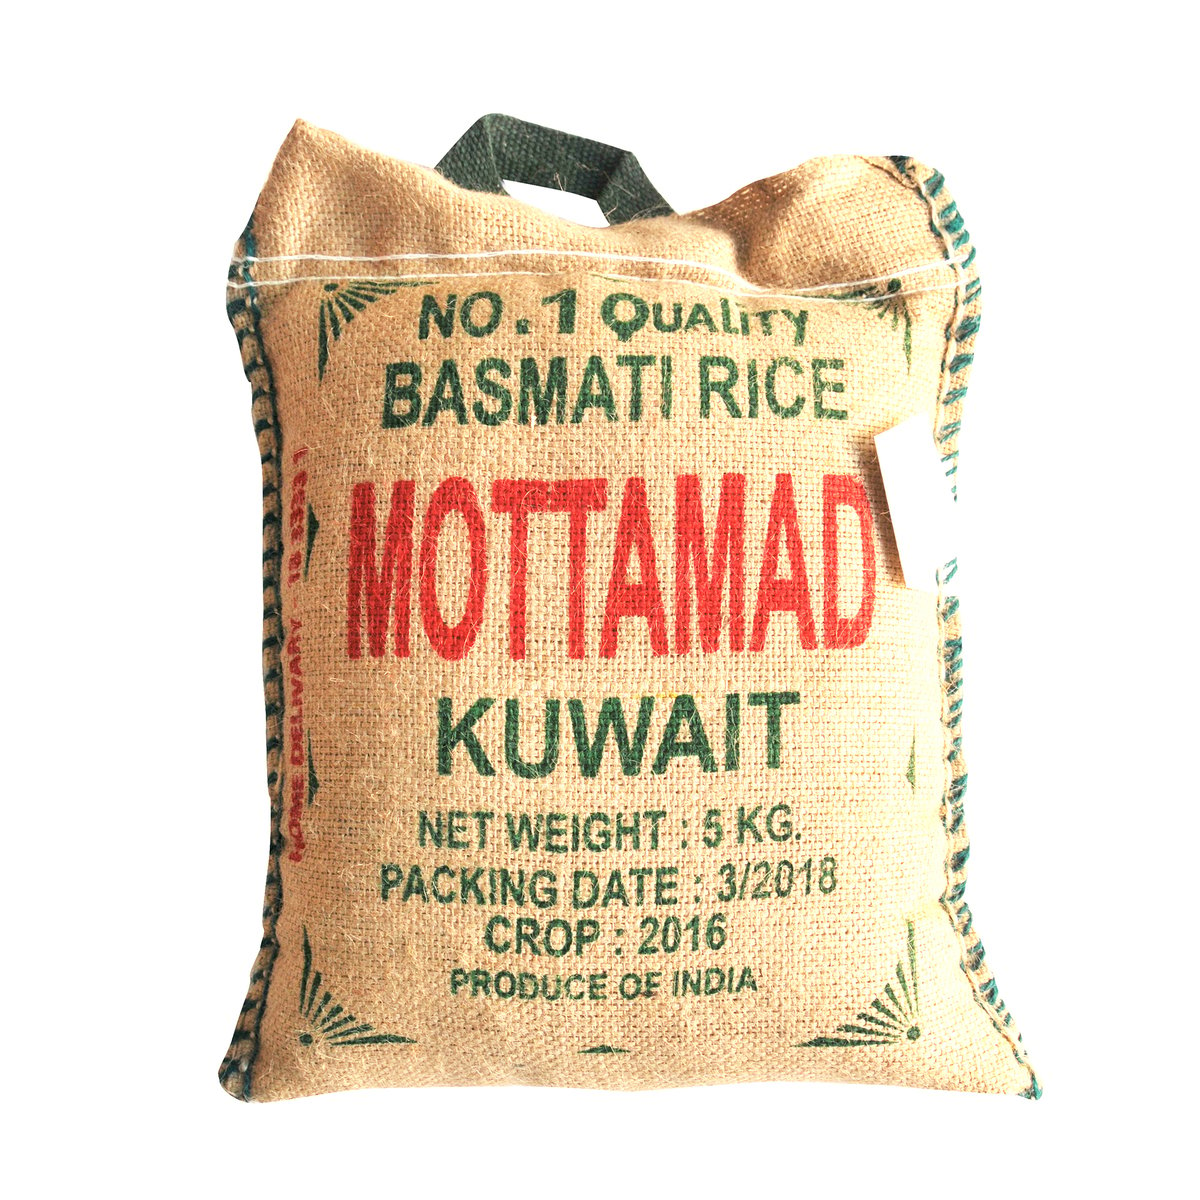 Mottamad Basmati Rice 5kg